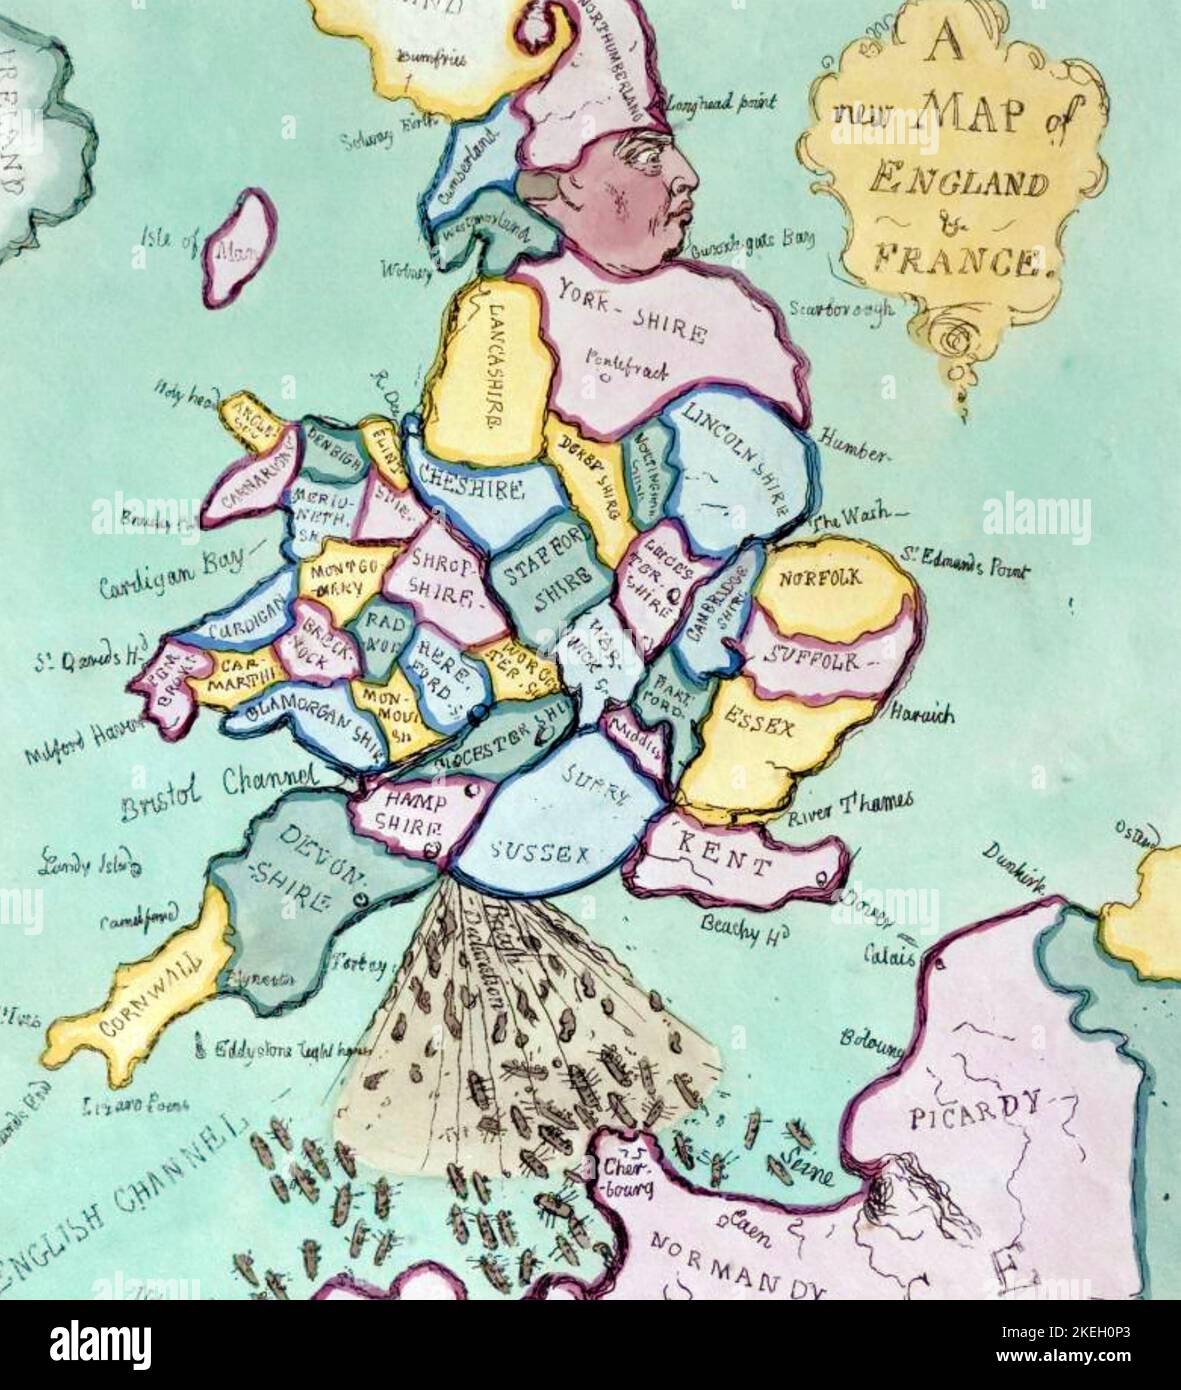 JAMES GILLRAY (7565-1818) Caricaturista inglés. 'Un nuevo mapa de Inglaterra y Francia - la invasión francesa o John Bull bombardeando los Bum-boats' - detalle. Foto de stock